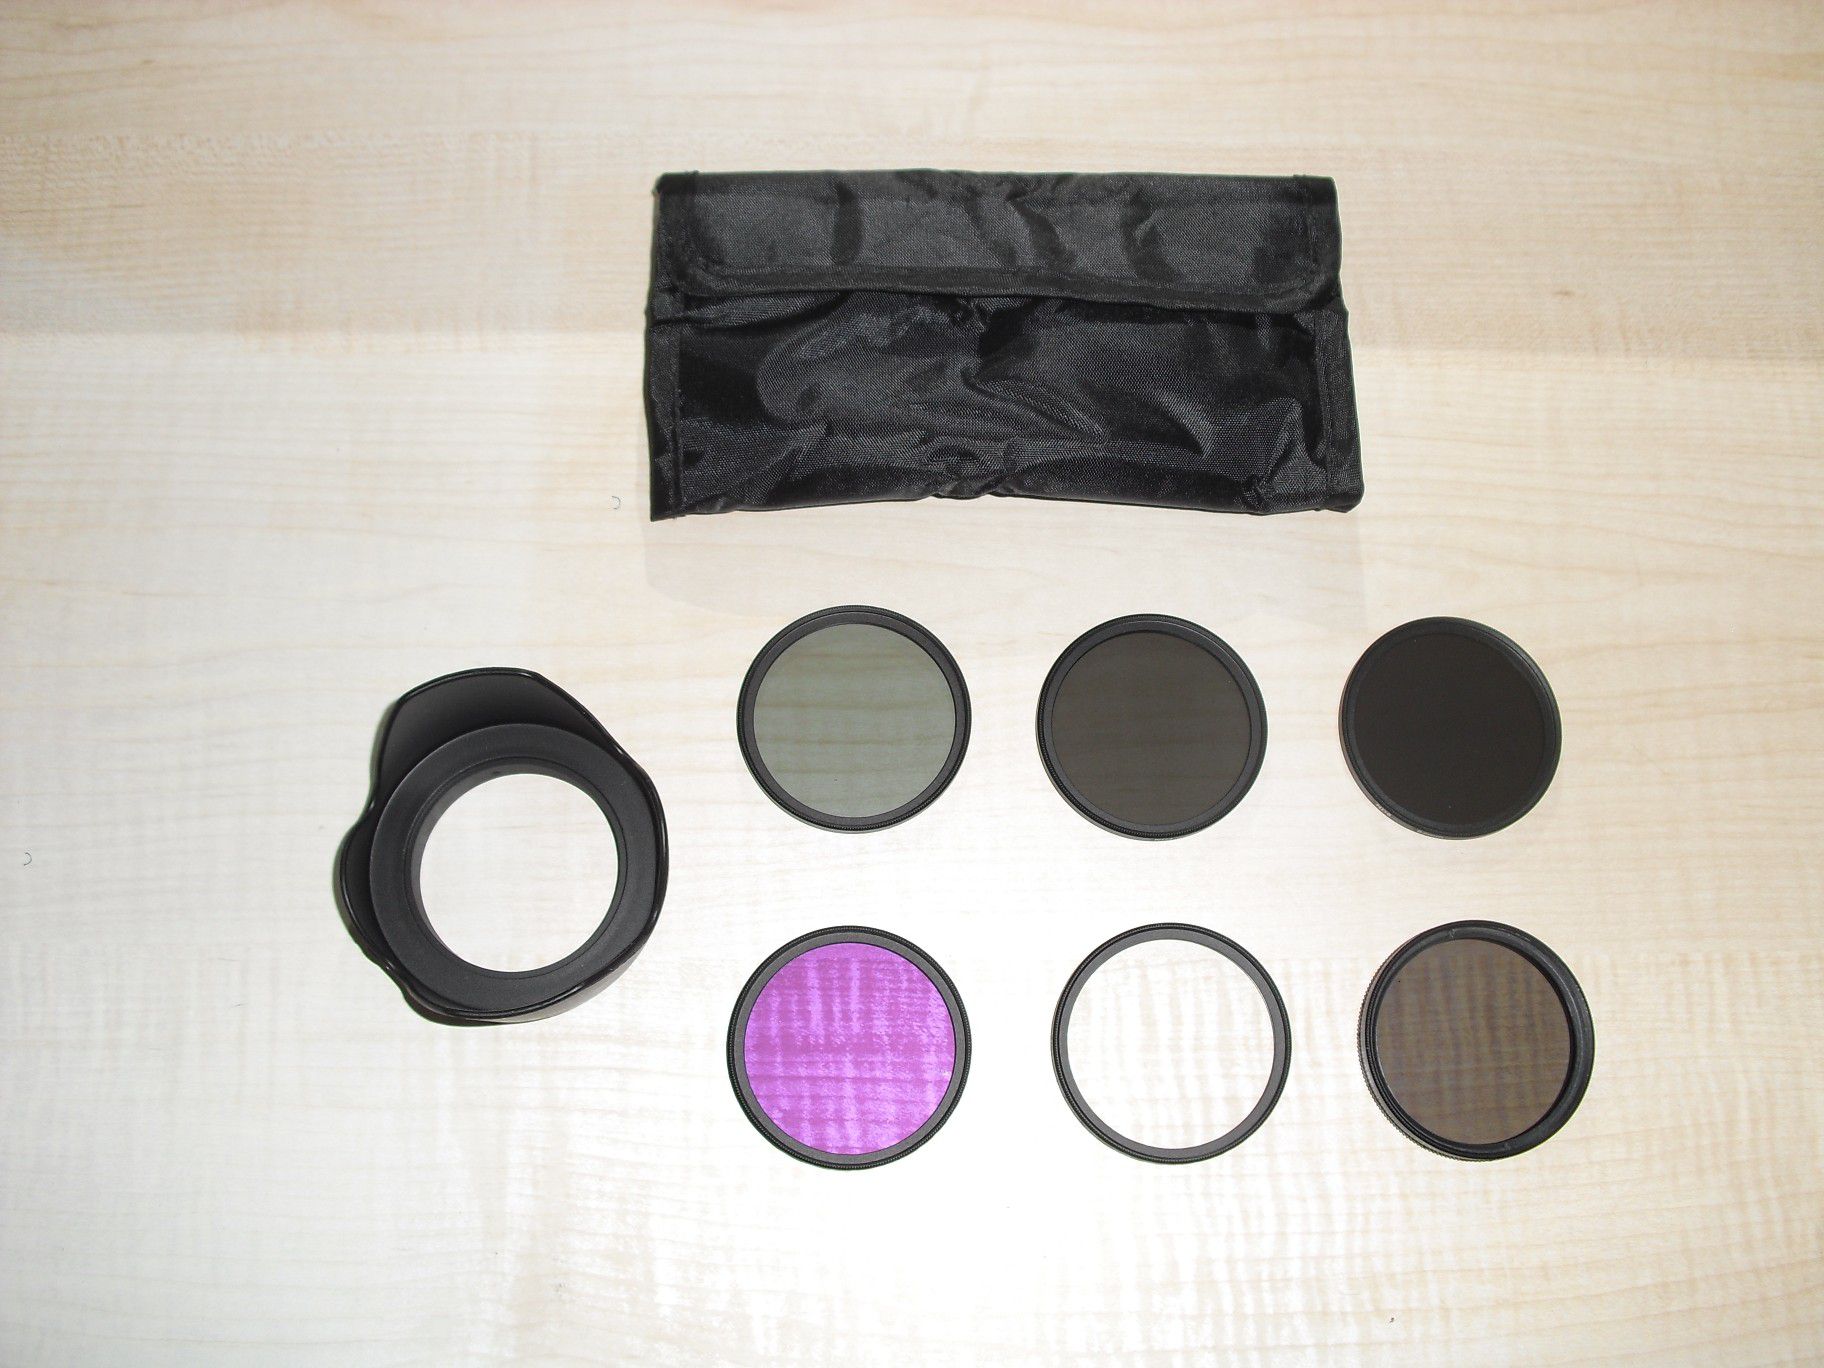 DSLR camera filter set and lens hood